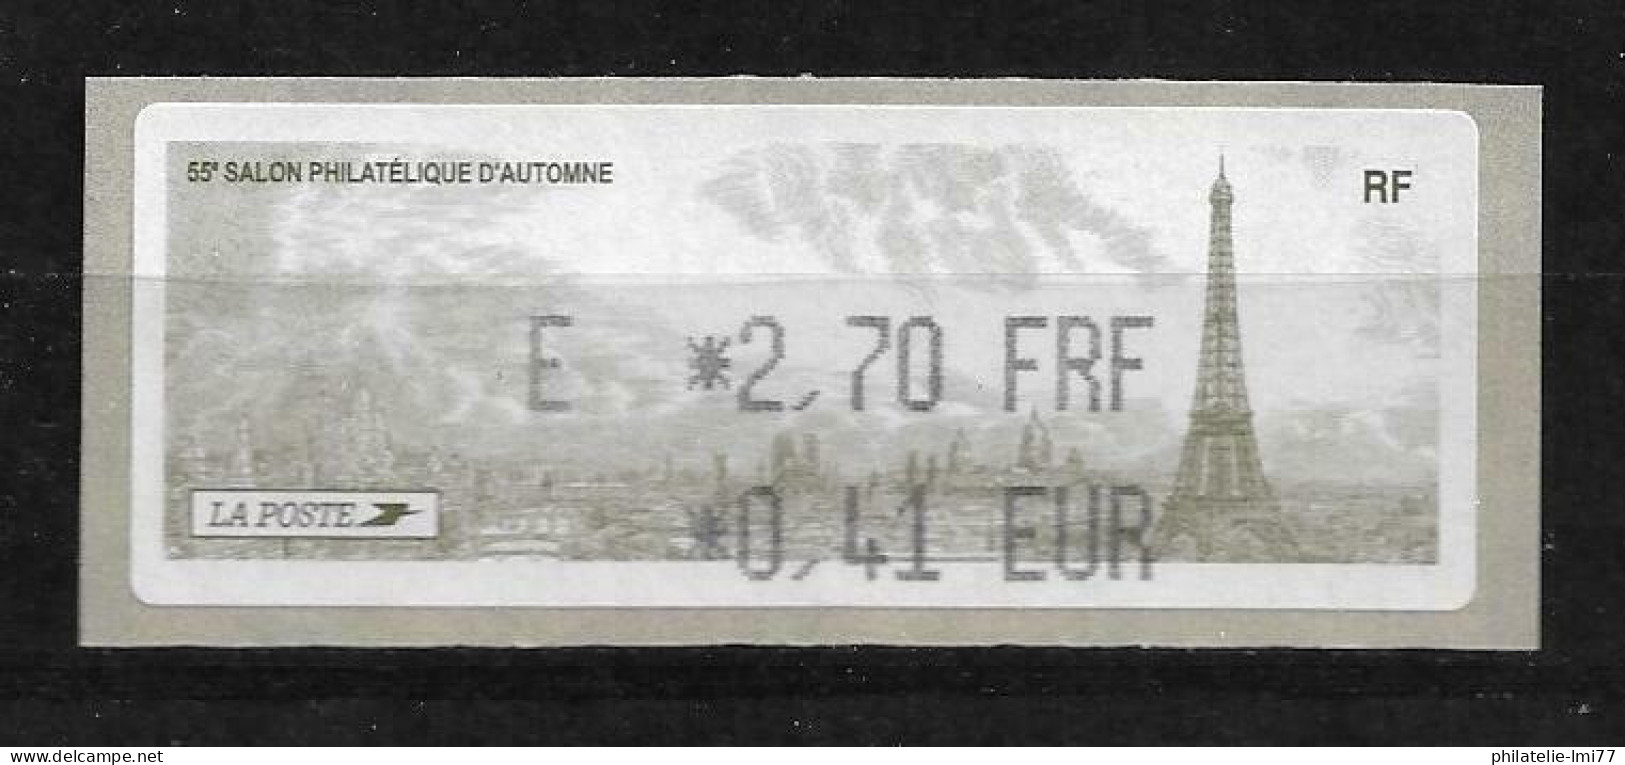 LISA 0,41 € - 55e Salon Philatélique D'automne - 1999-2009 Illustrated Franking Labels